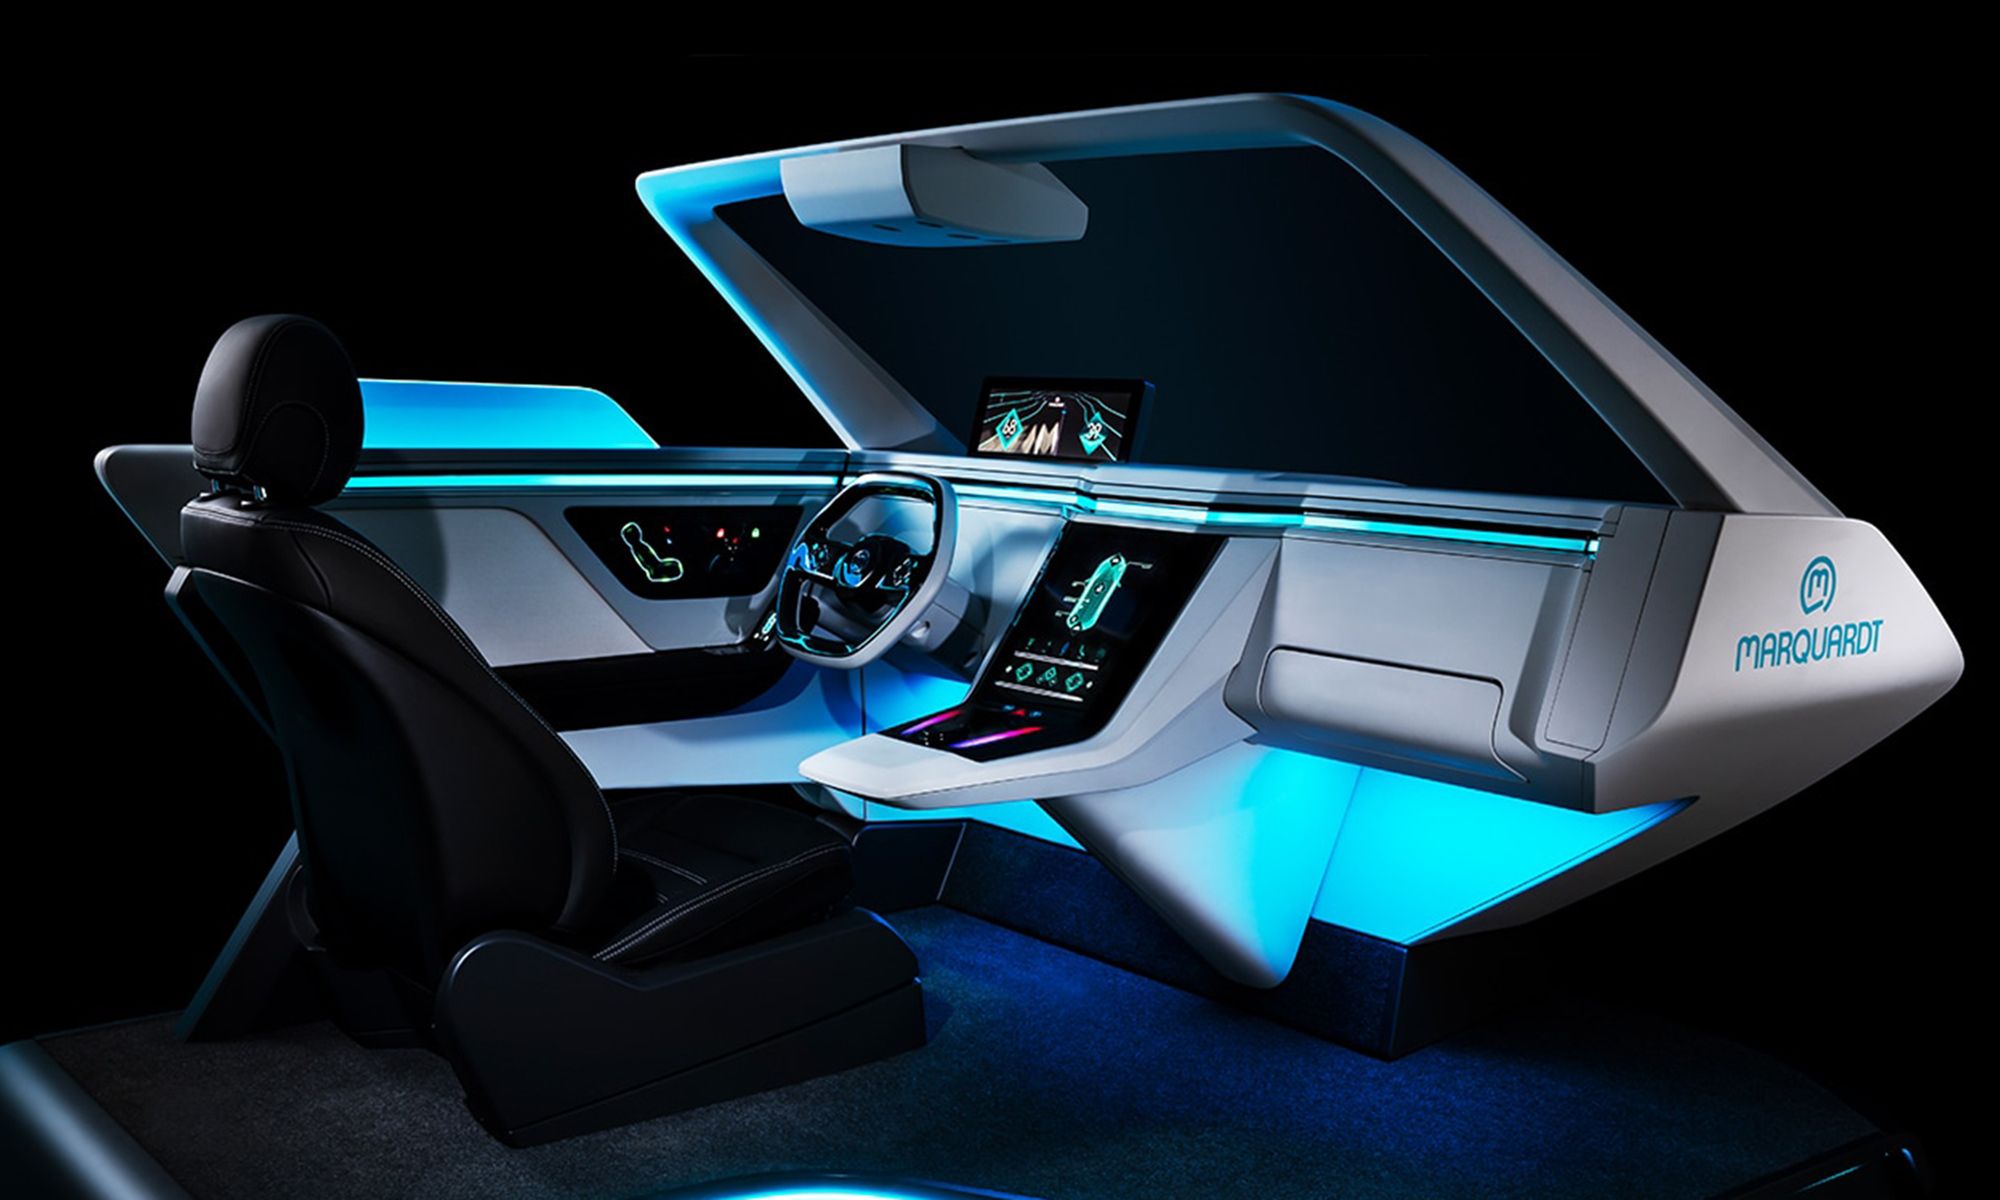 El prototipo de Marquardt Group proporciona los detalles concretos que se verán en los coches eléctricos próximamente.